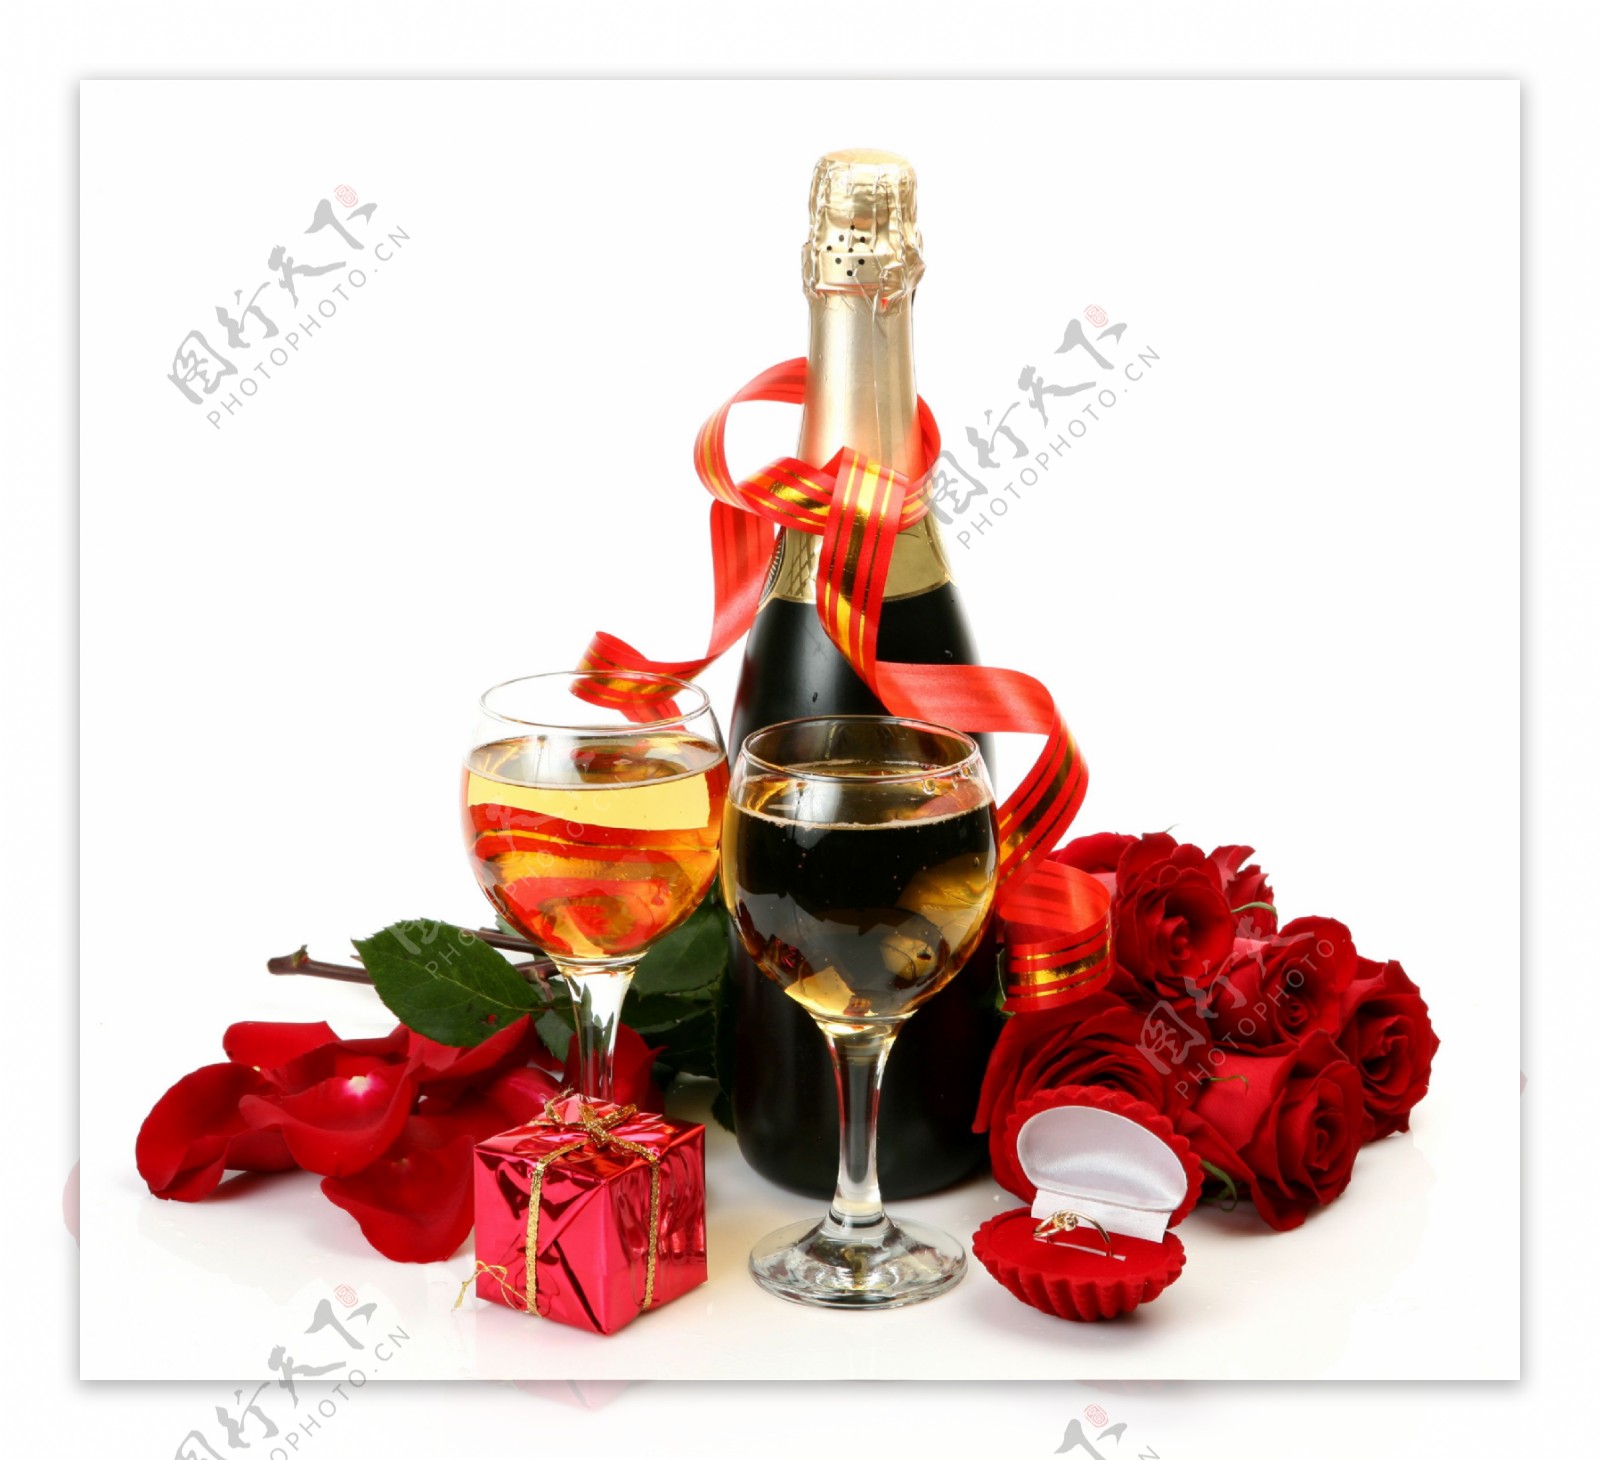 高档酒水礼品酒杯爱情红玫瑰婚戒餐具图片